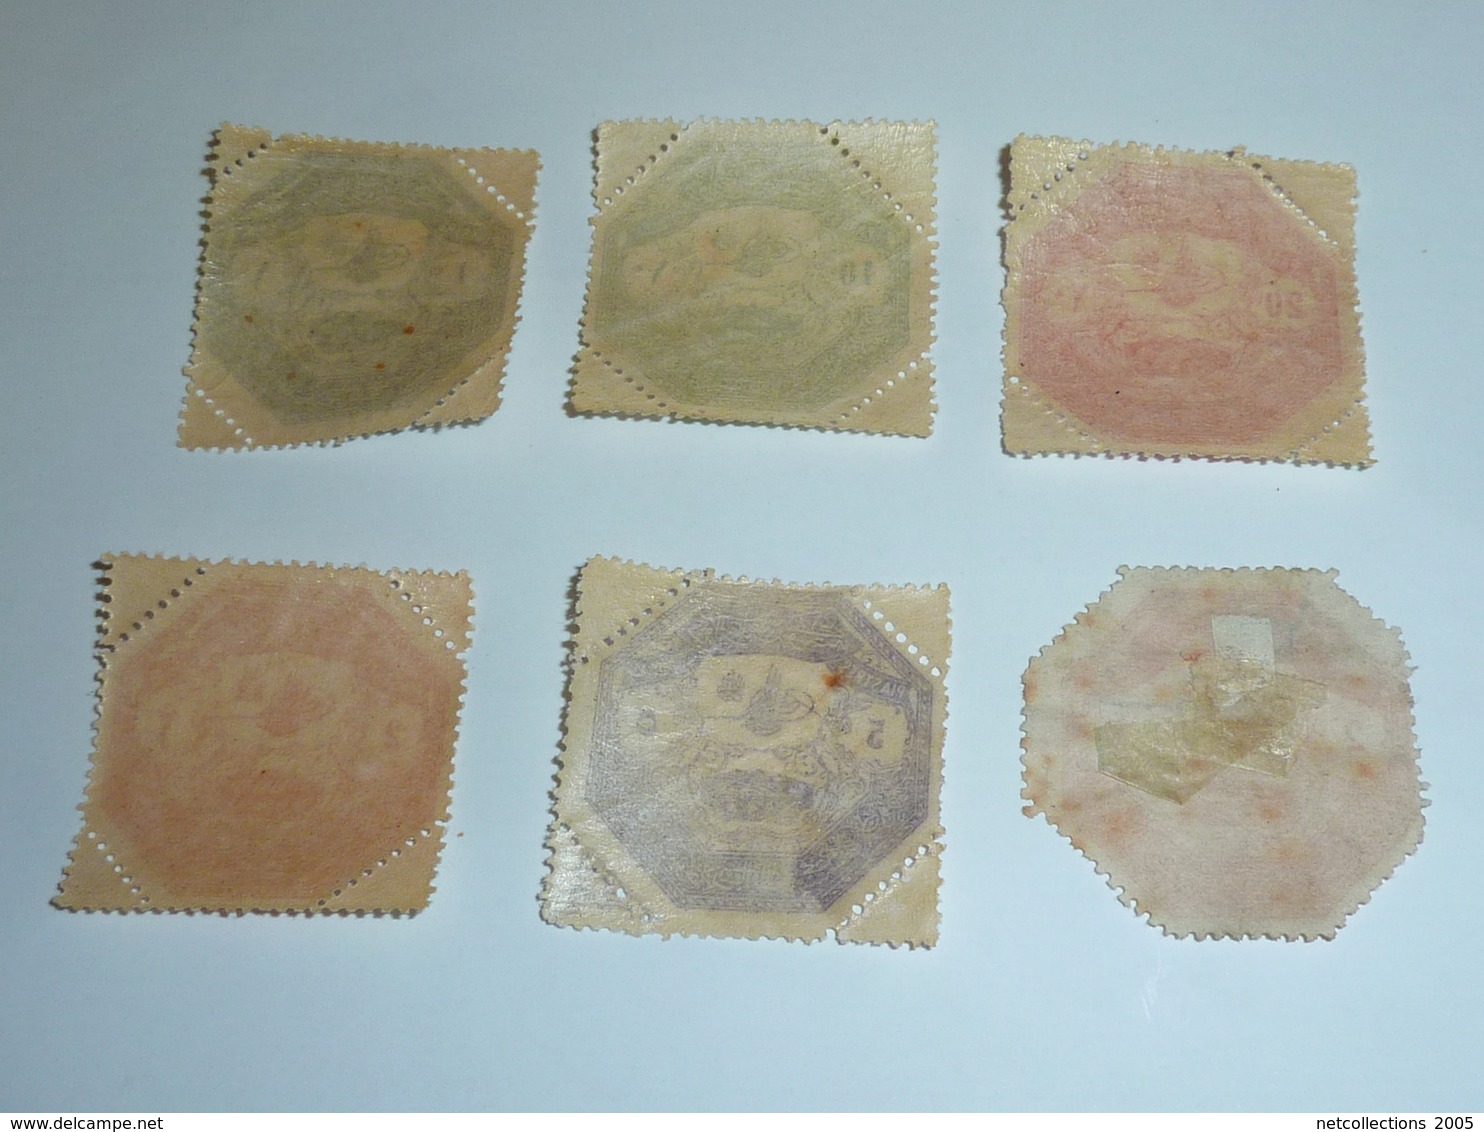 TIMBRES DE THESSALIE Du N°1 Au N°5 - ENSEMBLE DE 6 TIMBRES NEUF ET OBLITEREE  (C.V) - Local Post Stamps